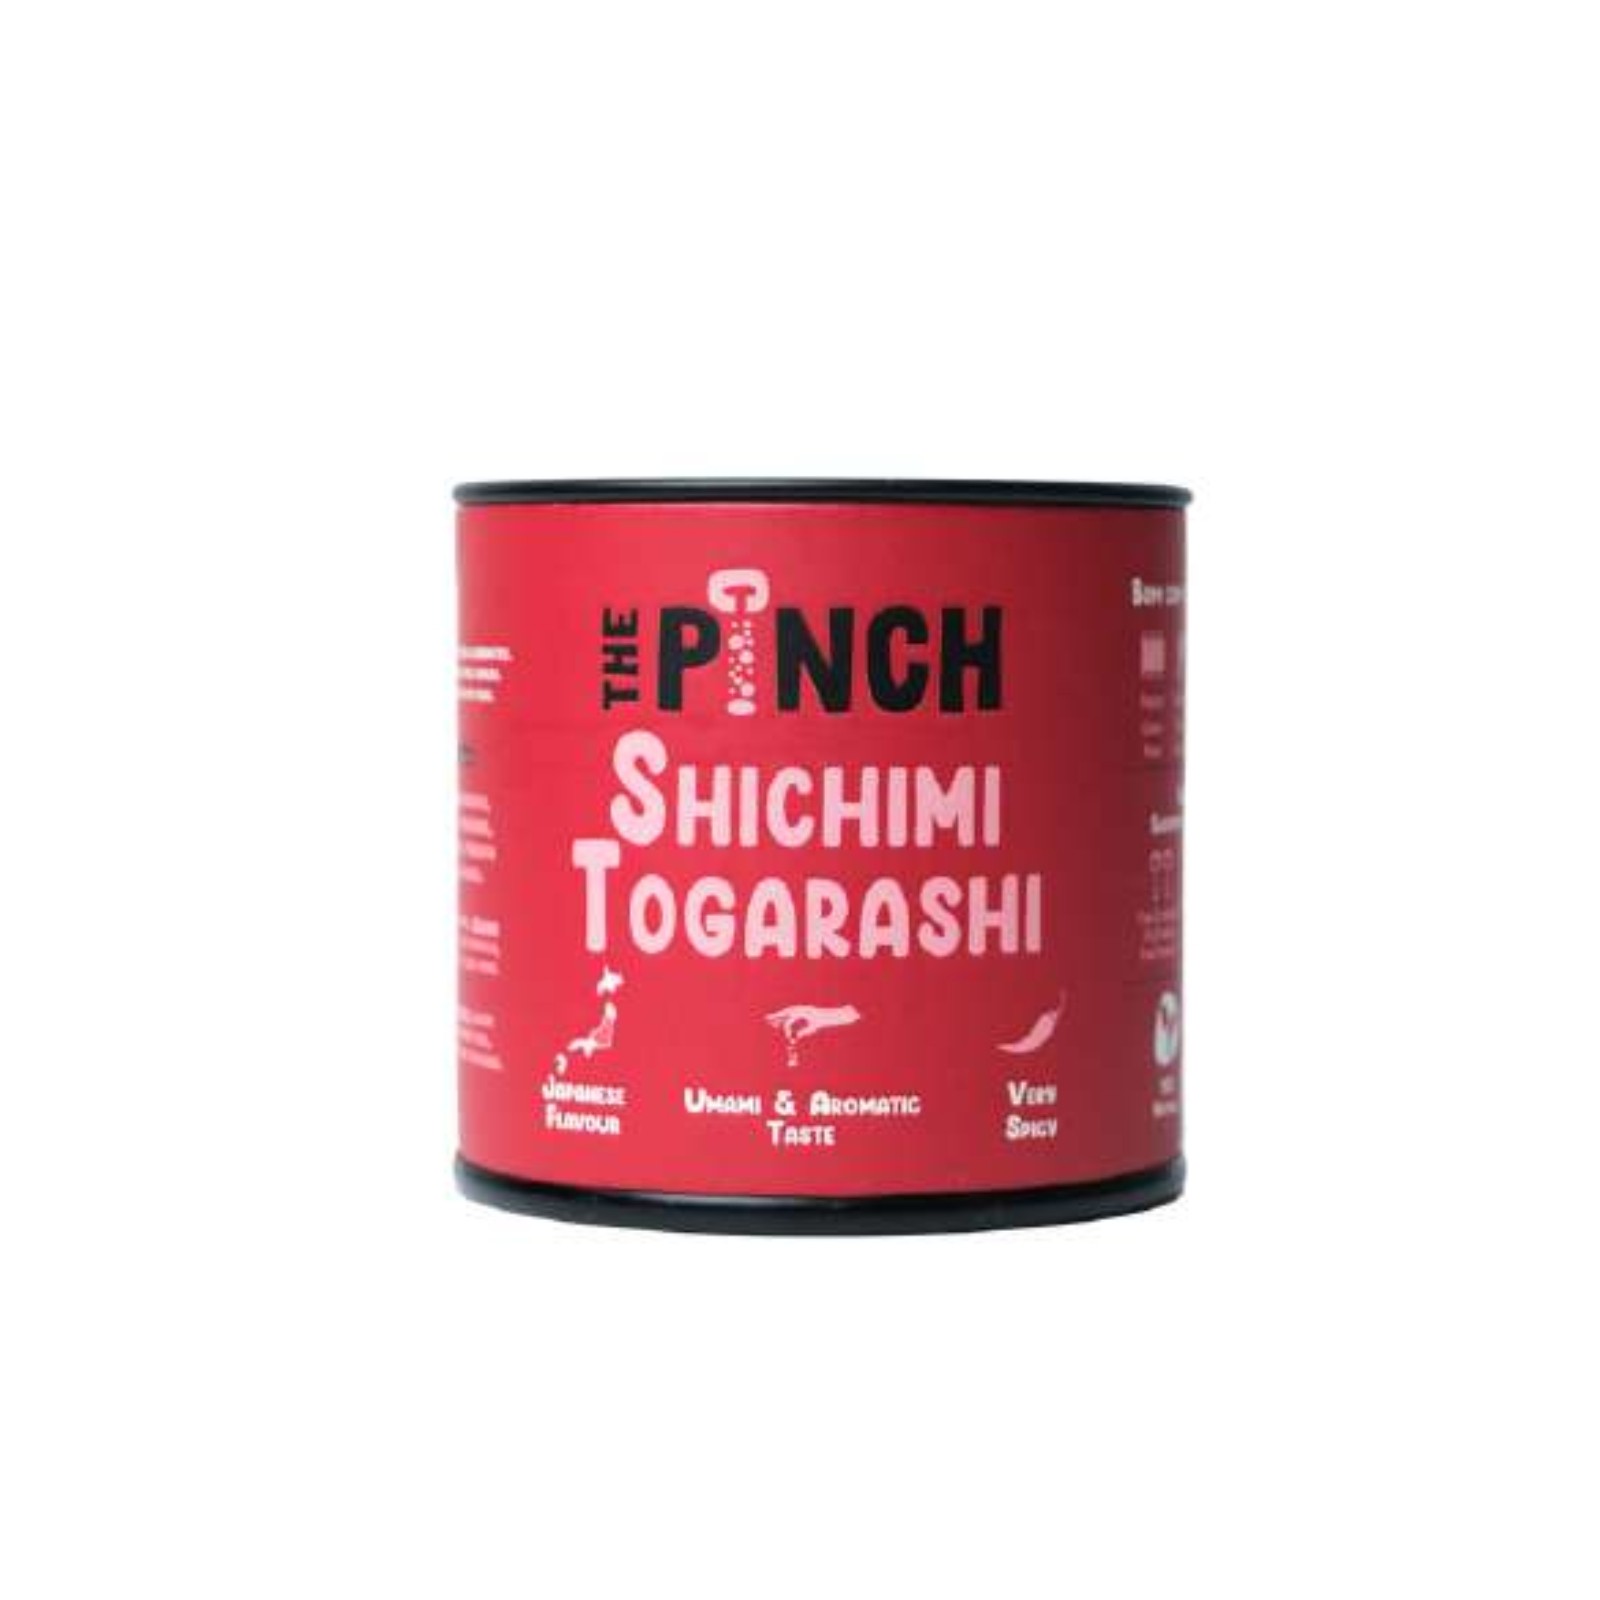 The Pinch Condimento Shichimi Togarashi